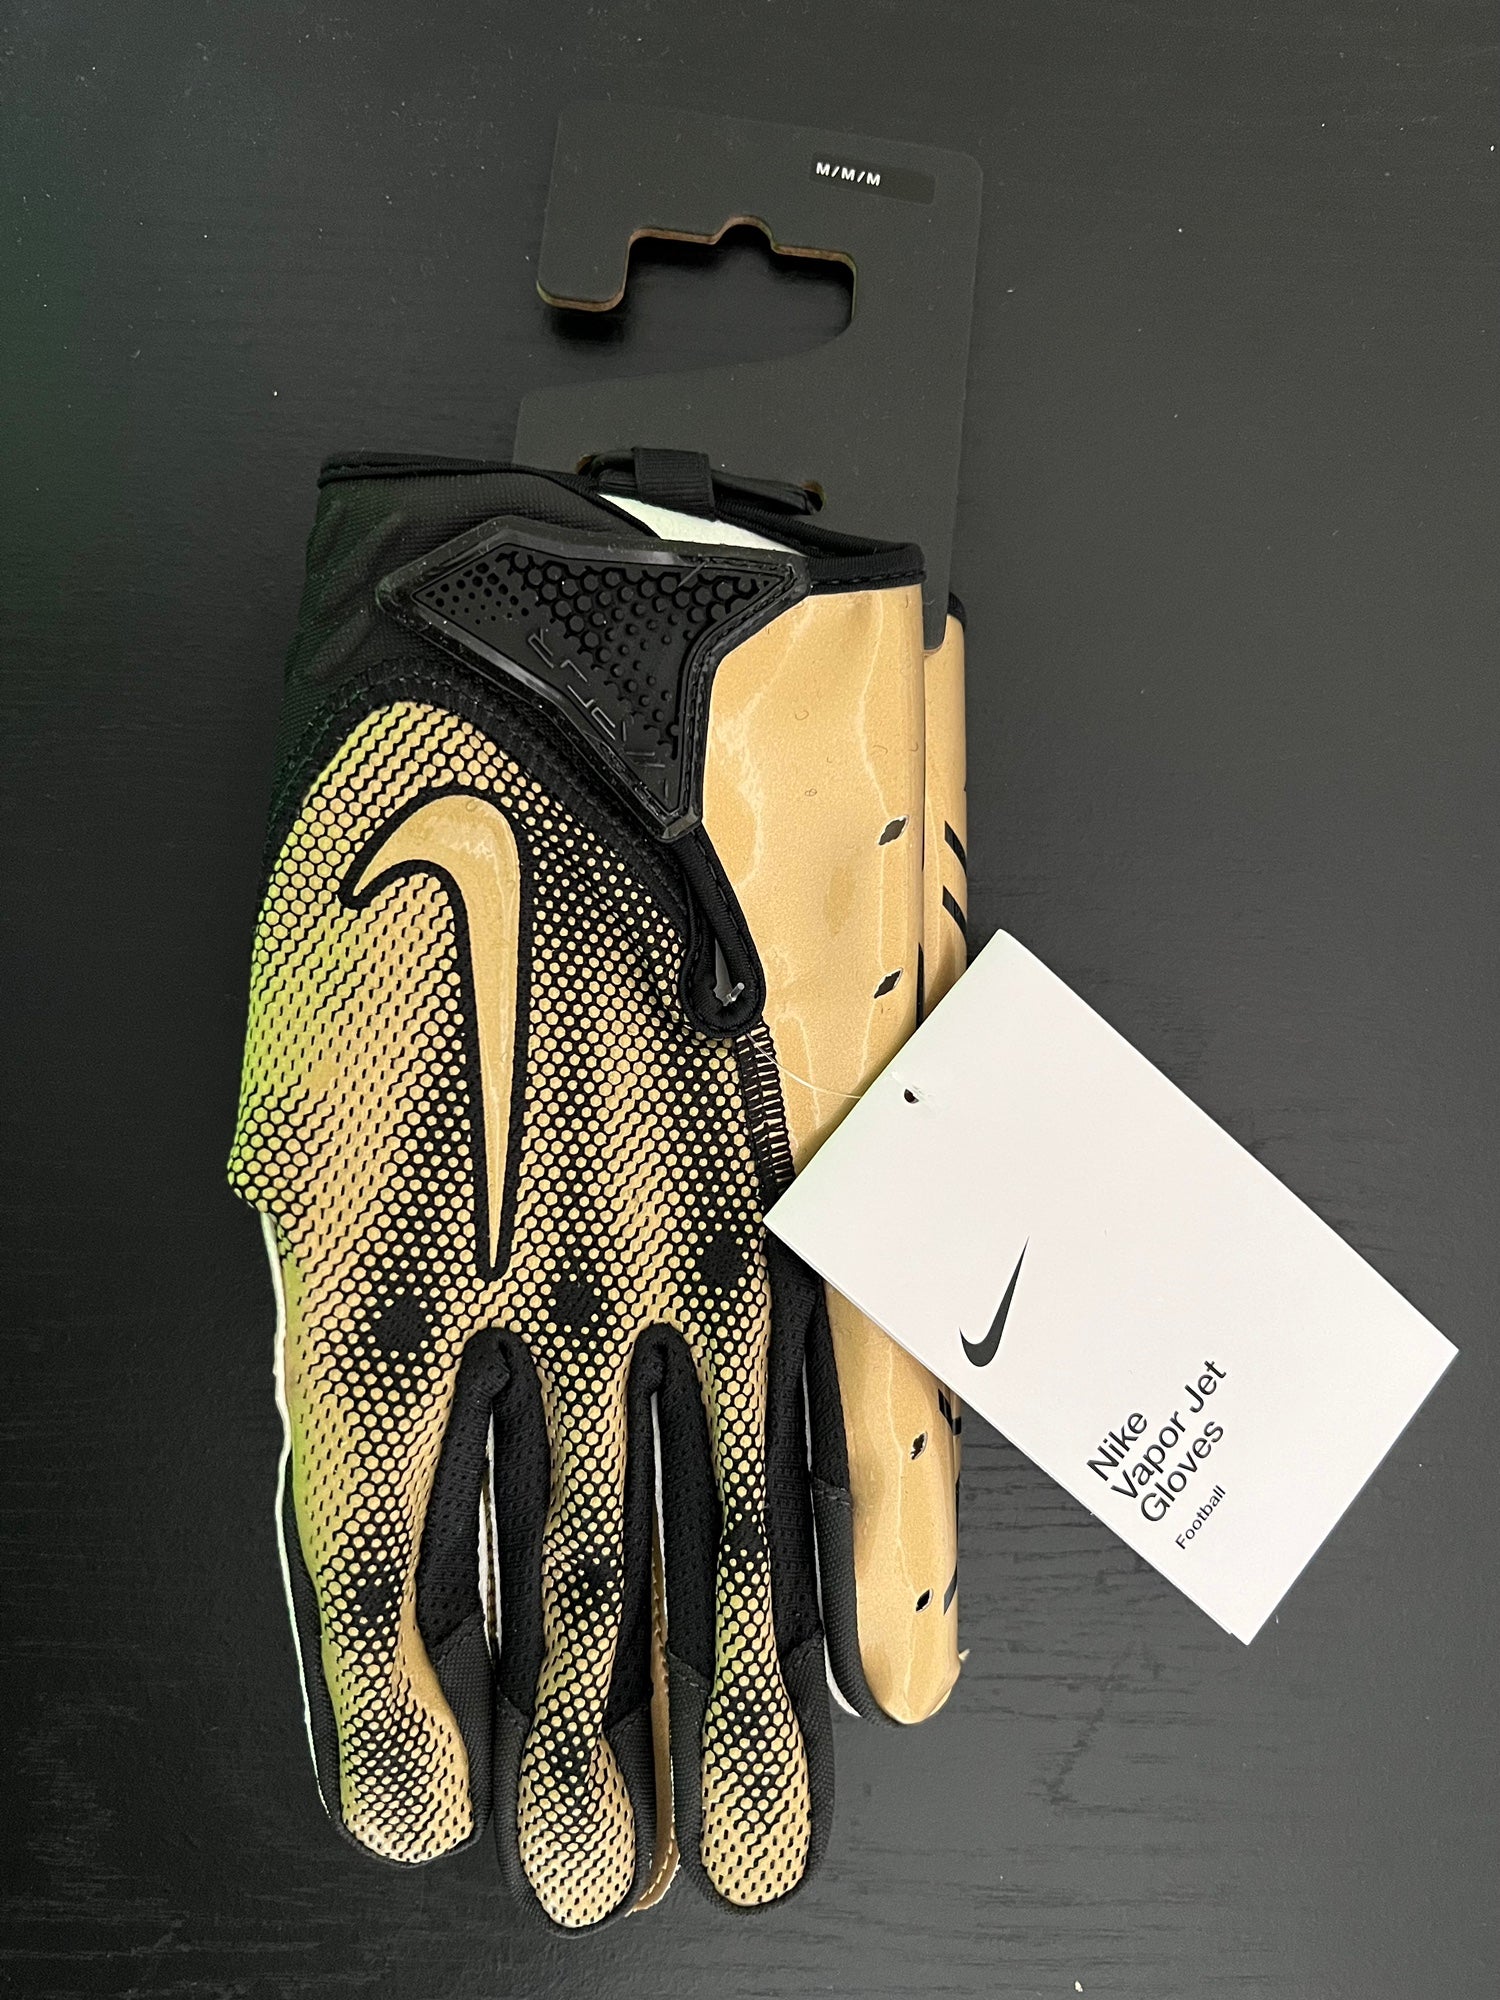 Nike Vapor Jet 7 NCAA Iowa State Receiver Football Gloves DX4936